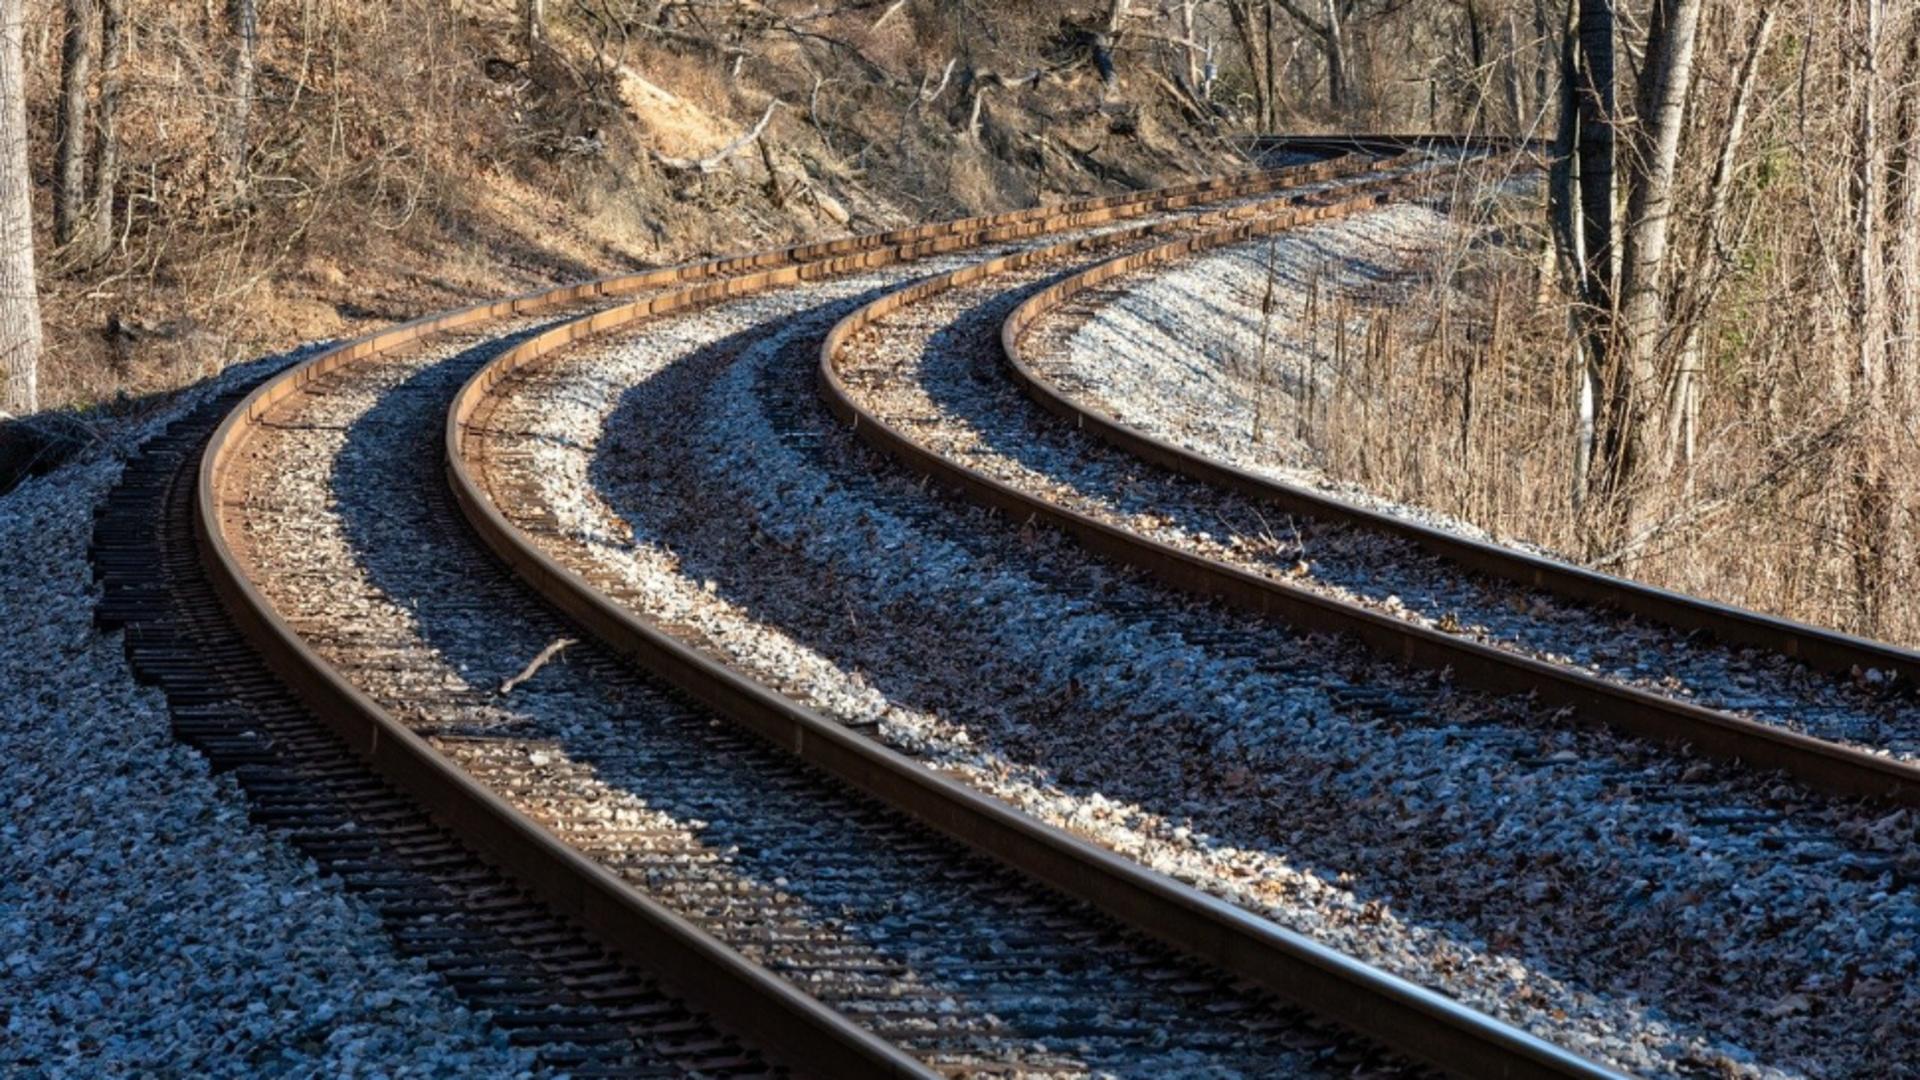 Circulația trenurilor oprită temporar în Mureș din cauza unui incident feroviar